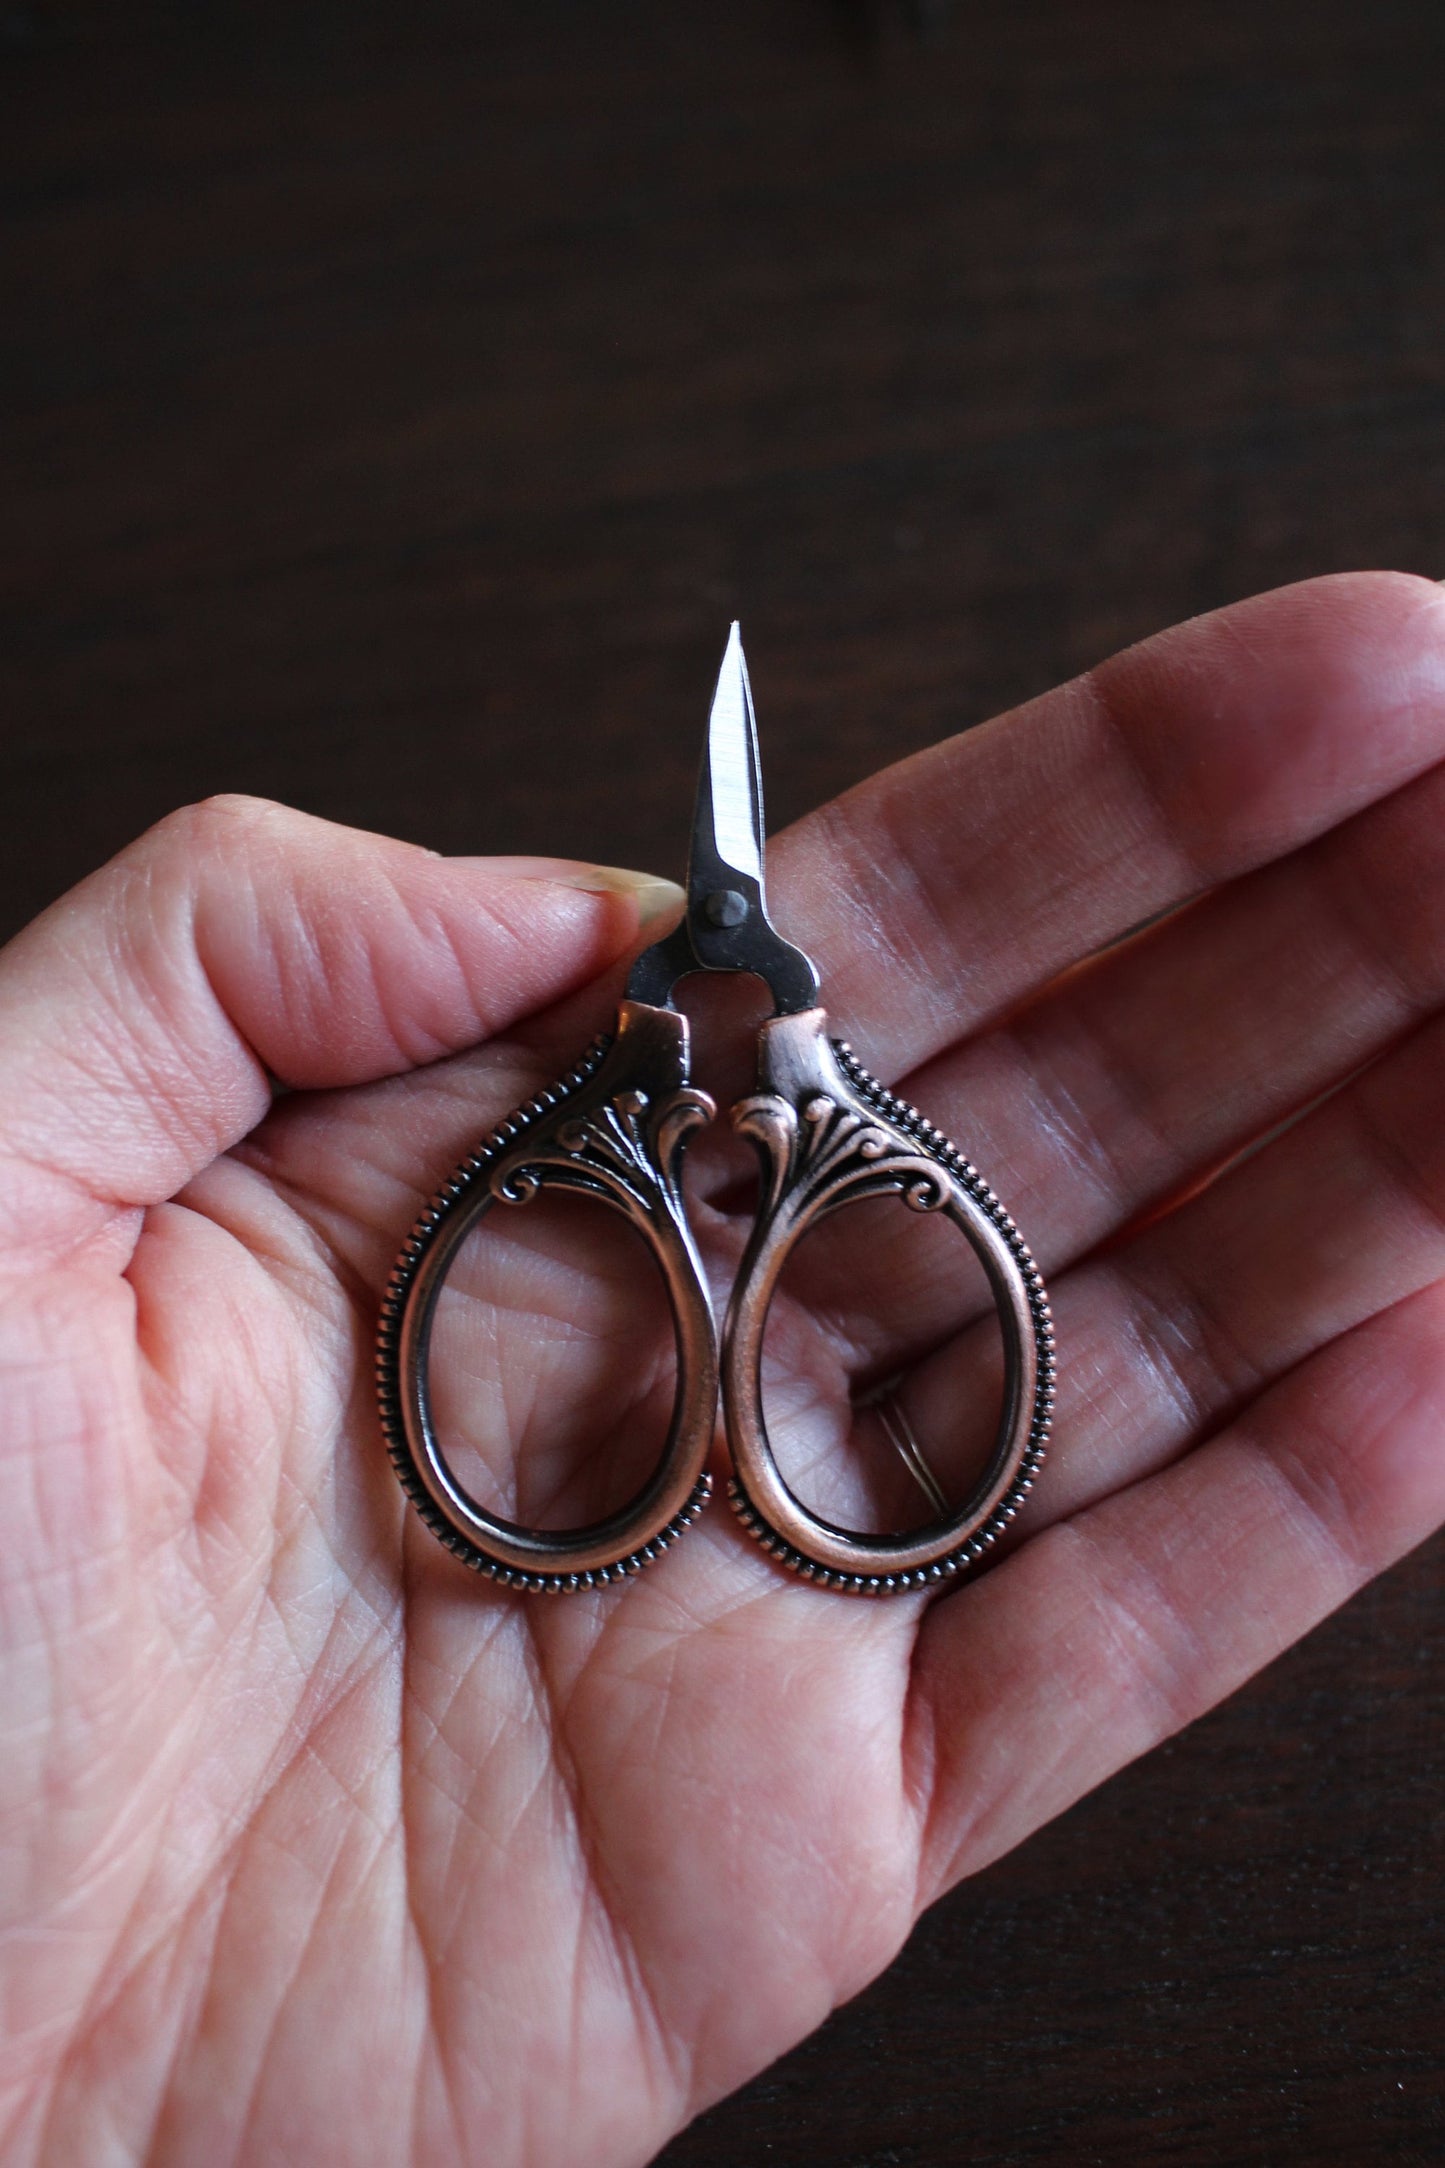 Mini Loop Scissors